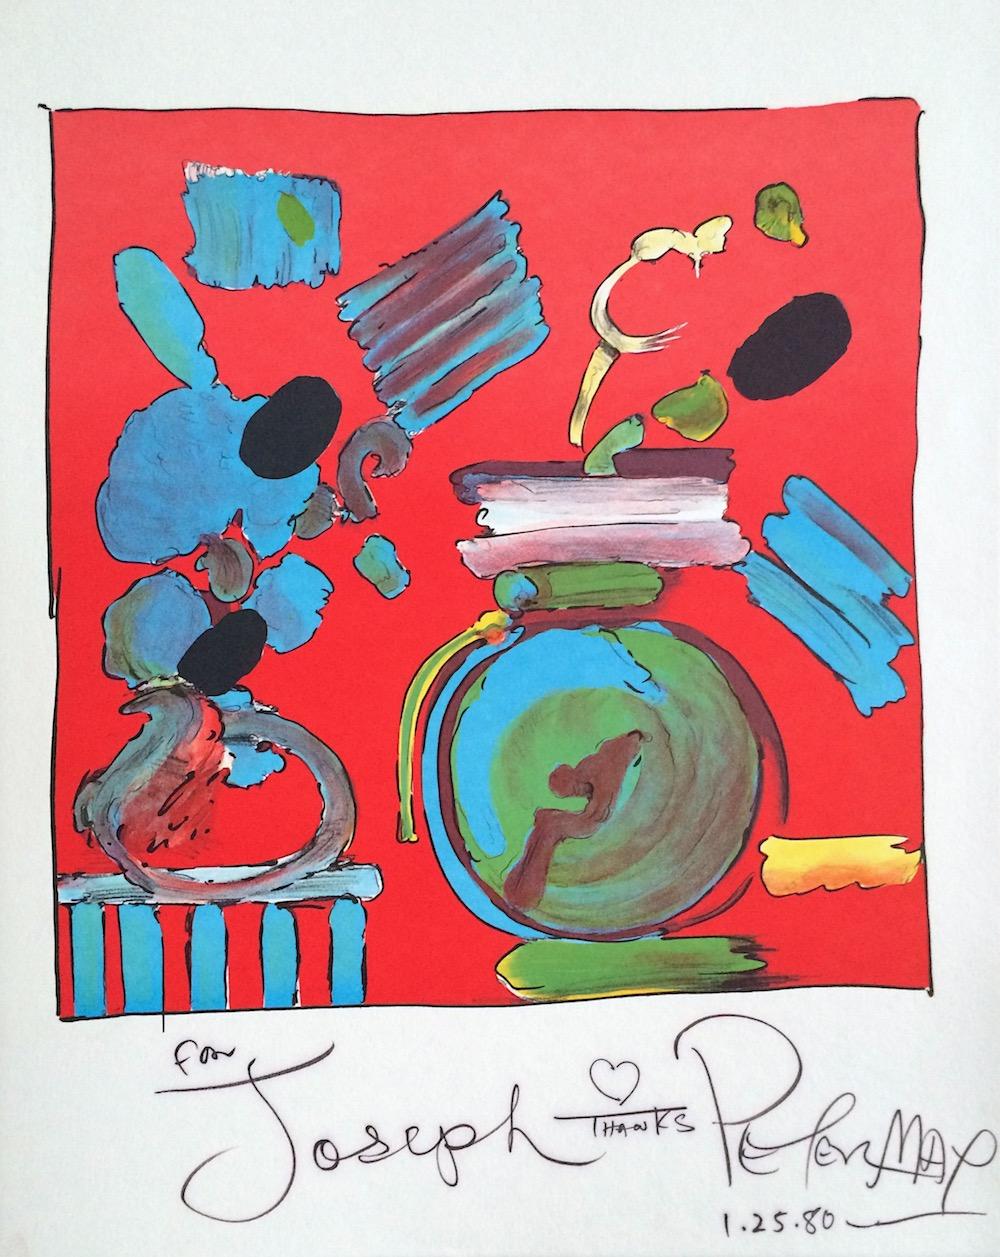 COMPOSITION Lithographie rouge signée, nature morte florale abstraite, vase bleu rond - Print de Peter Max